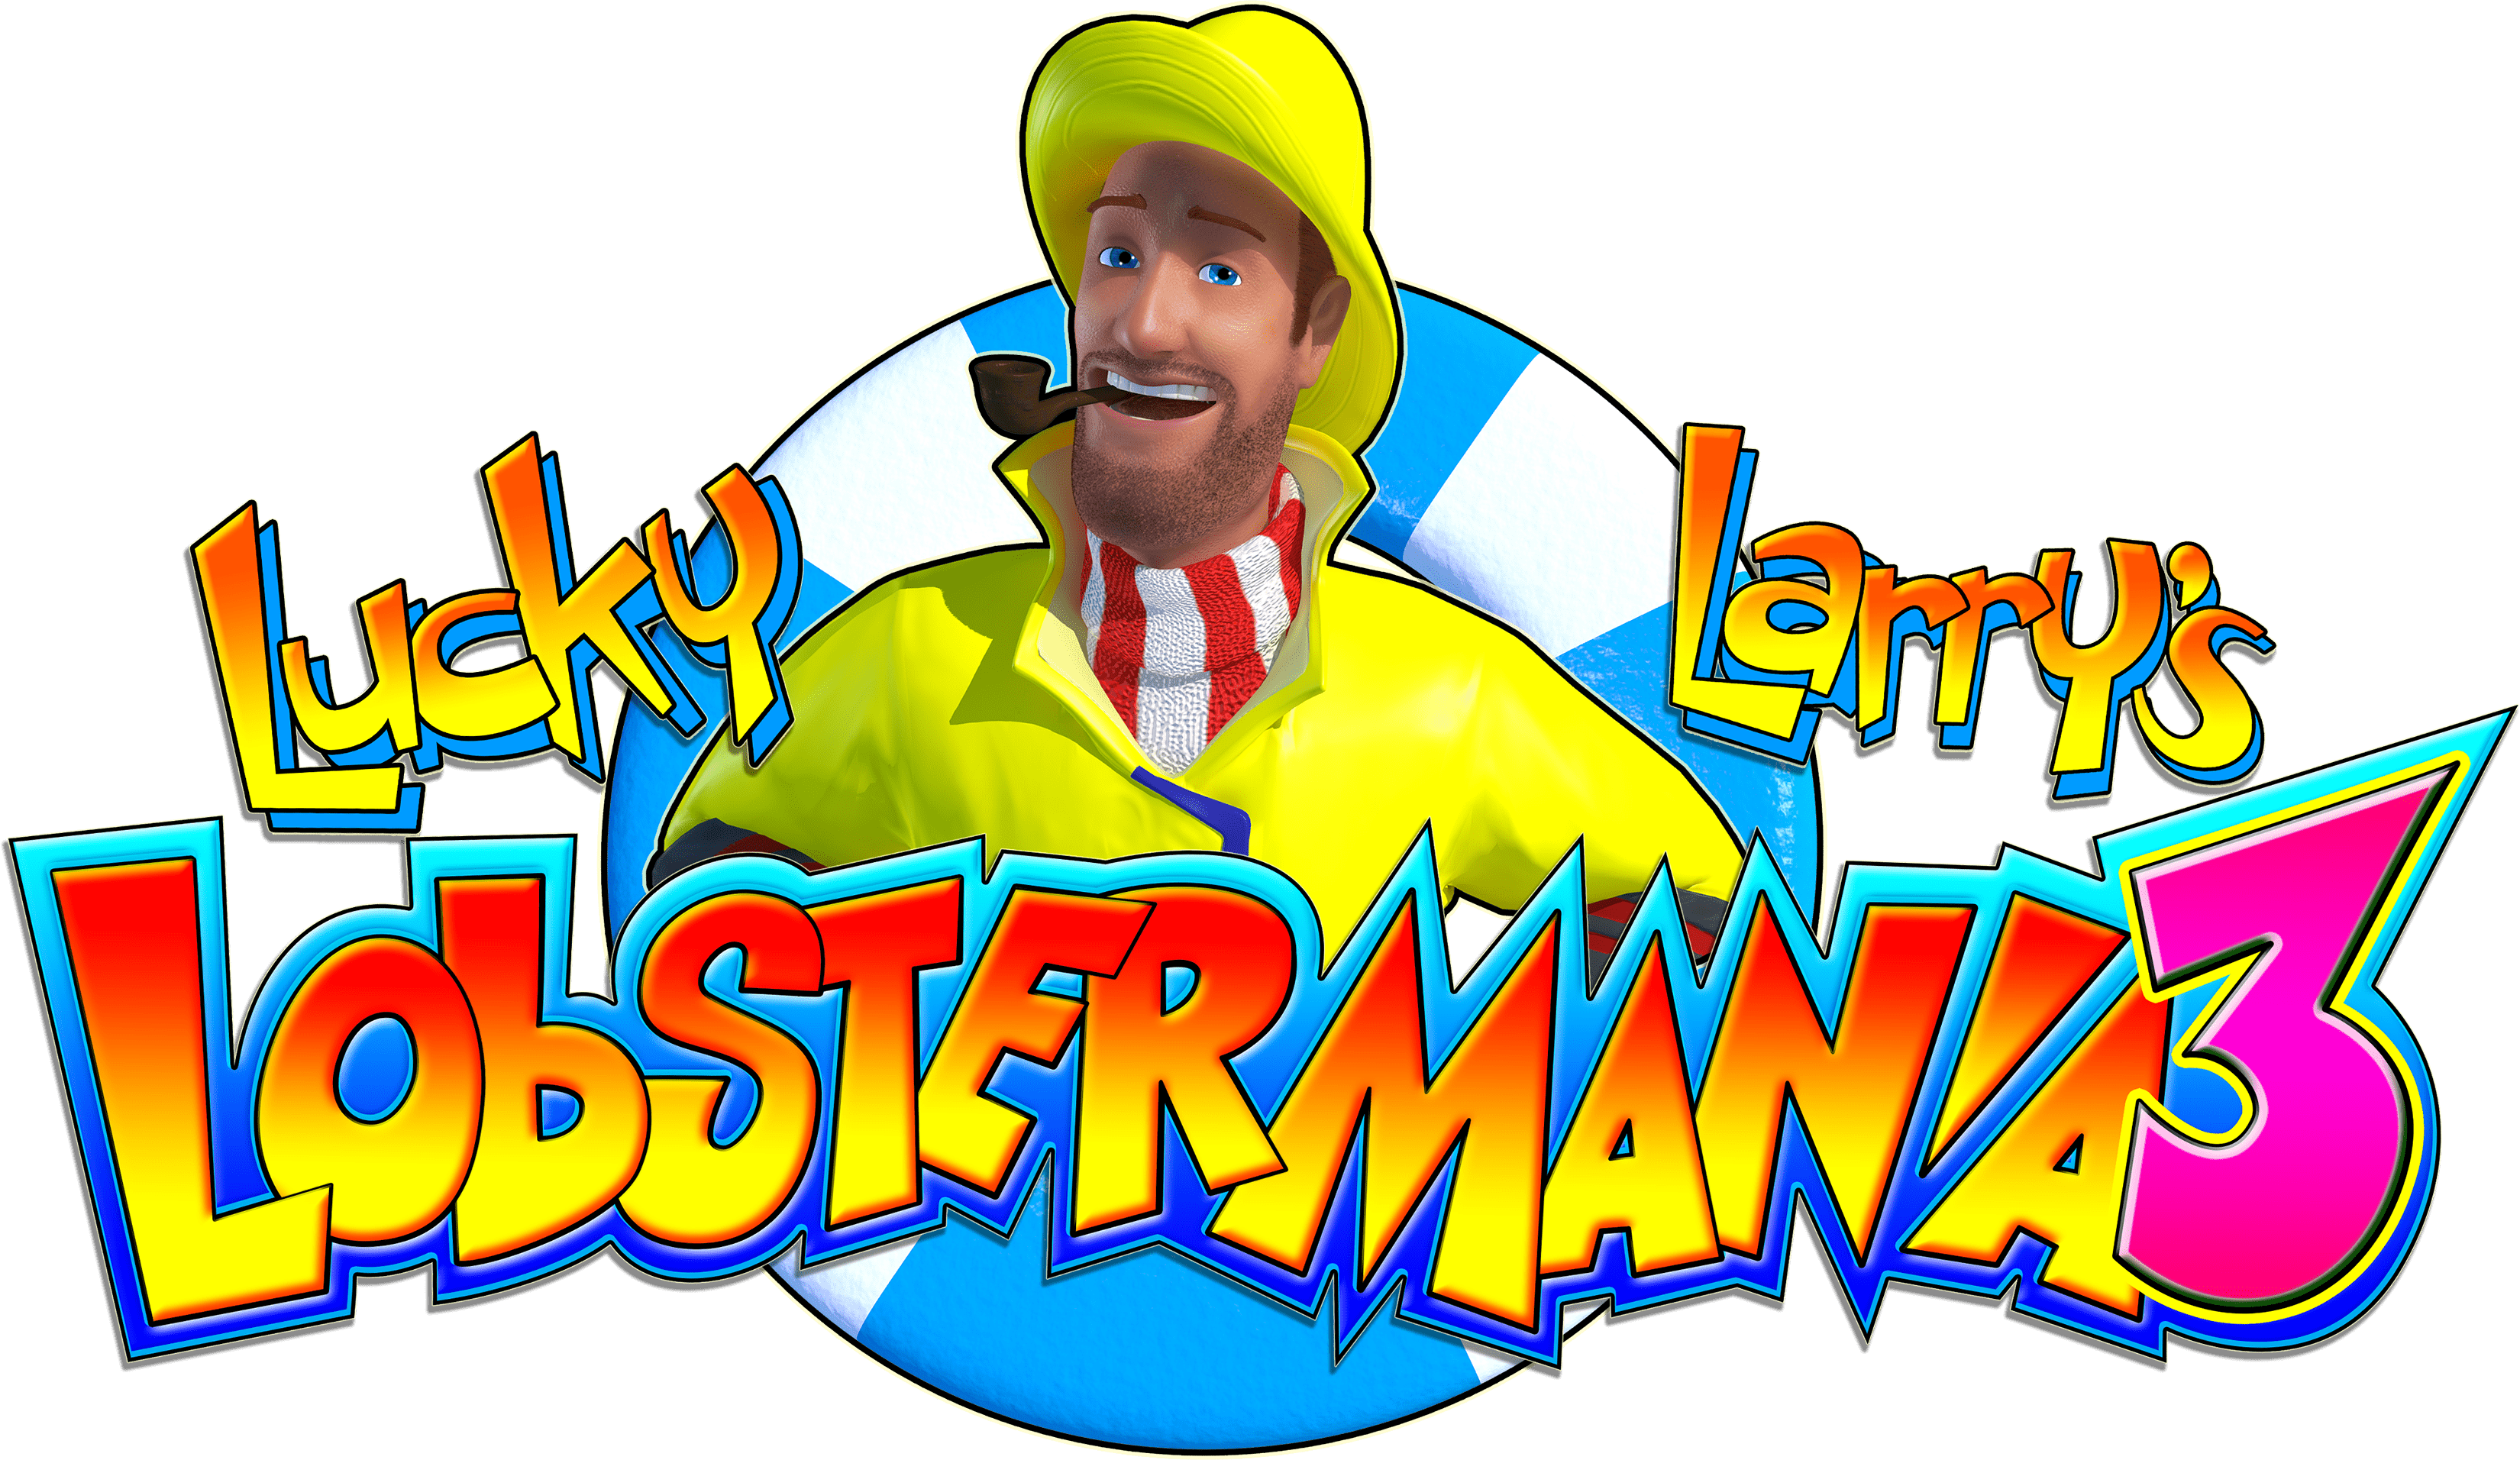 Larry Lobstermania